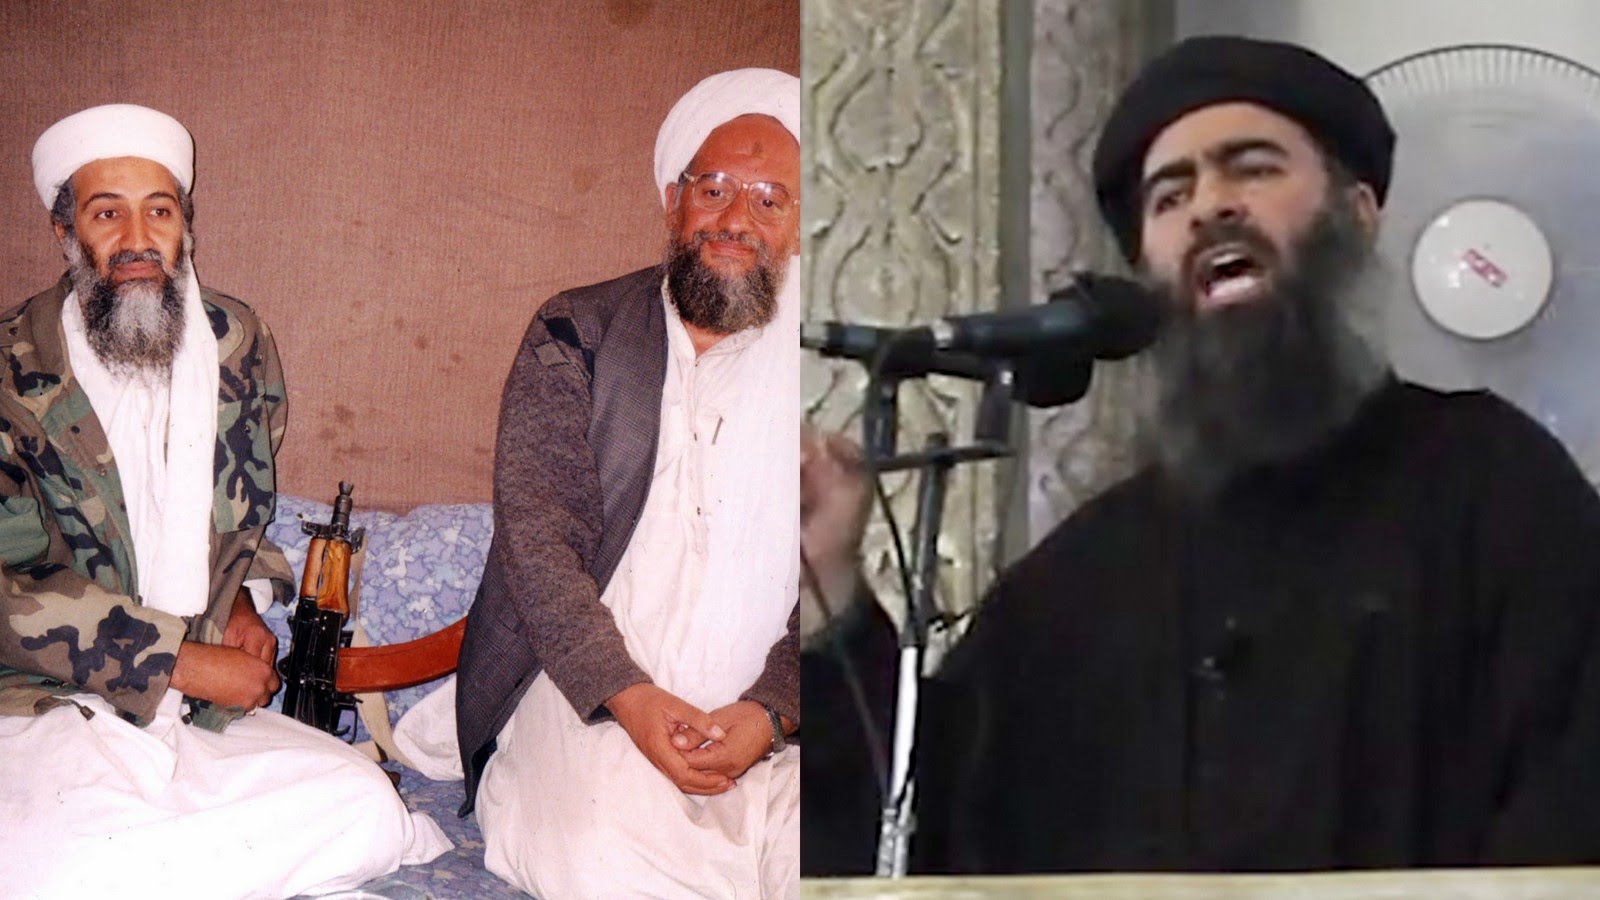 The Birth of IS - Al Qaeda